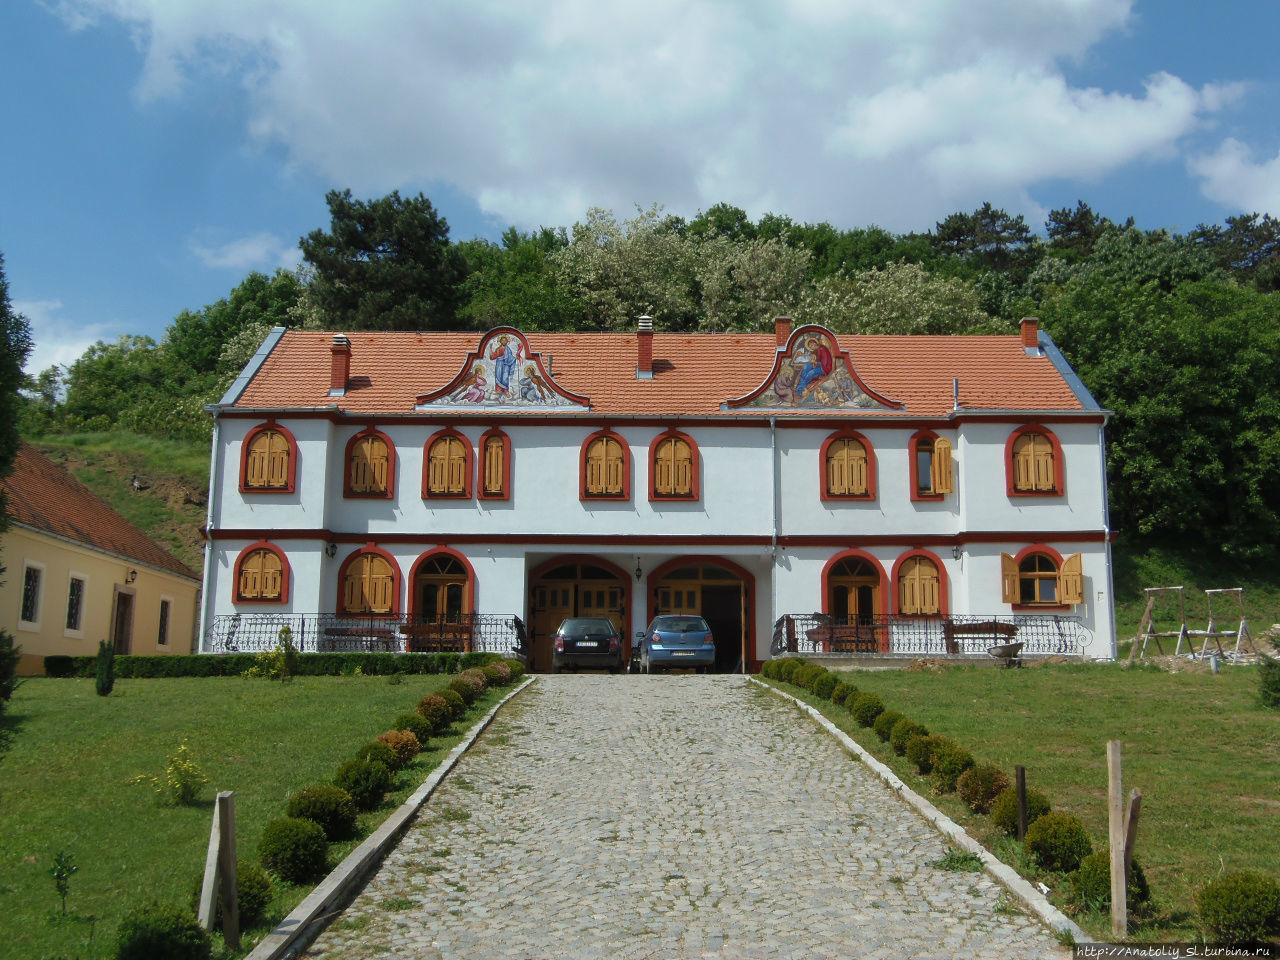 Фрушка гора. Часть 3. Монастырь Гргетег. Фрушка-Гора Национальный парк, Сербия